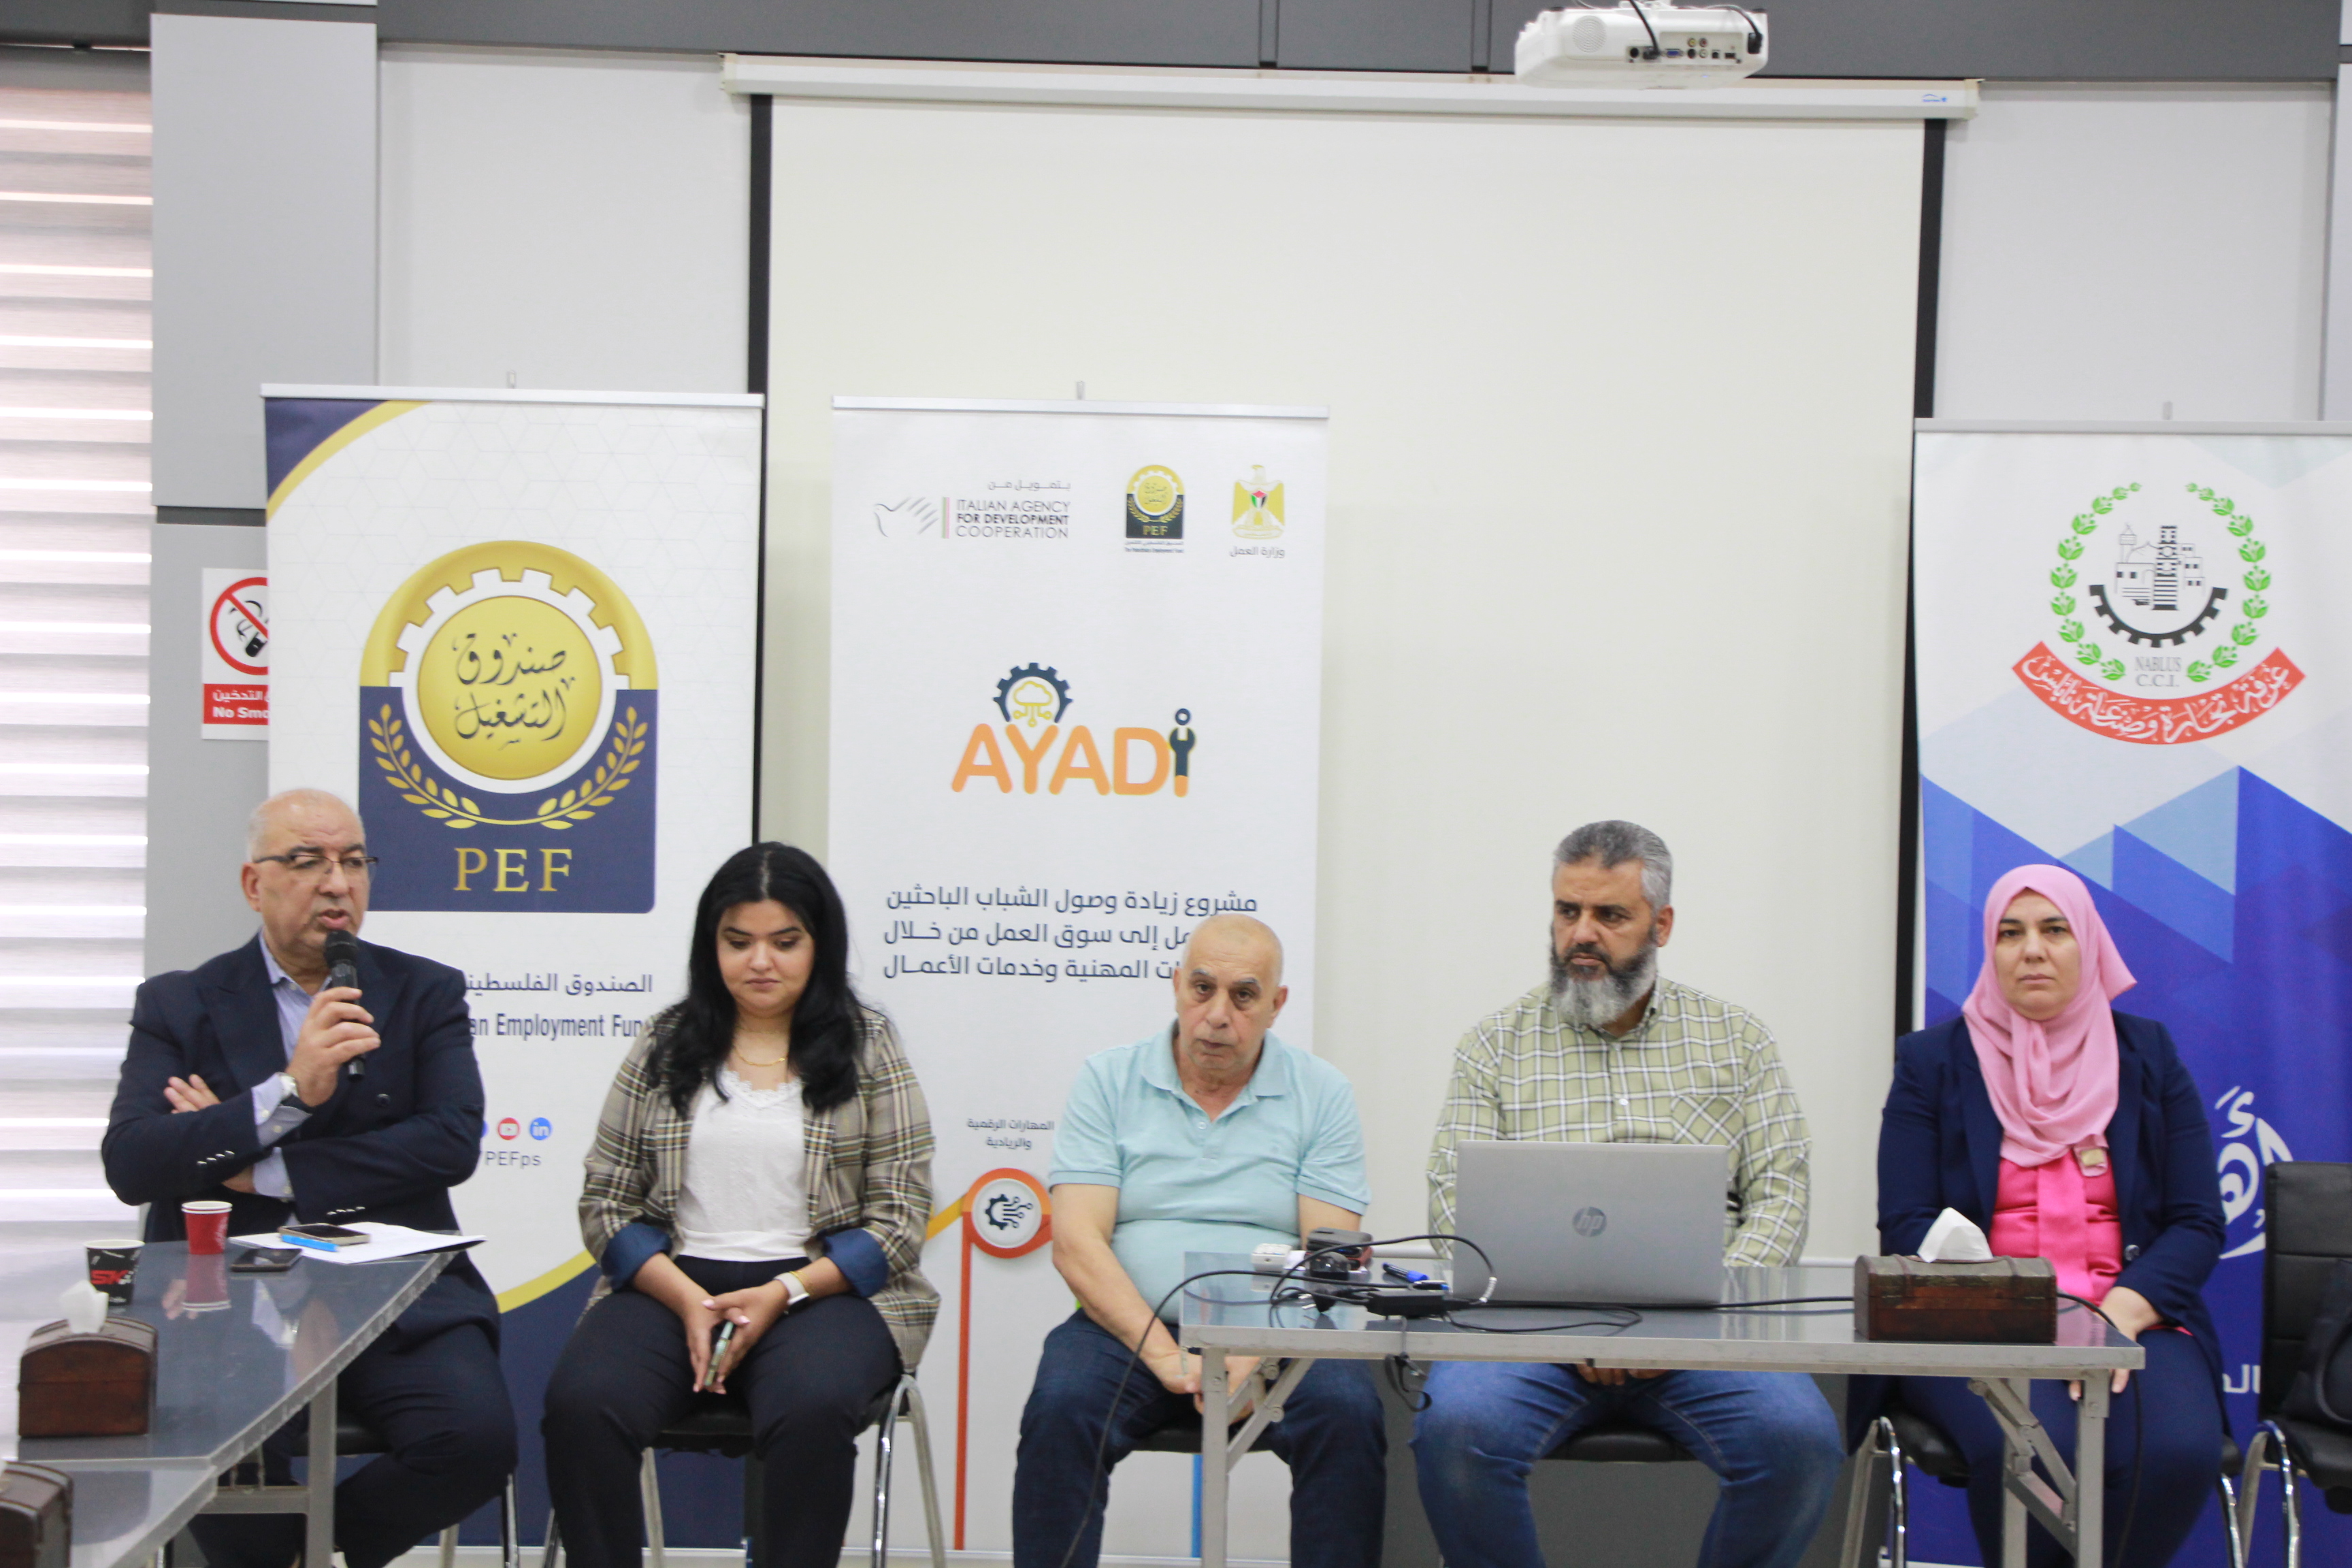 شارك امين سر الغرفة السيد اياد الكردي في الورشة الخاصة بـ (مشروع زيادة وصول الشباب الباحثين عن عمل إلى سوق العمل من خلال التدريبات المهنية وخدمات الأعمال 